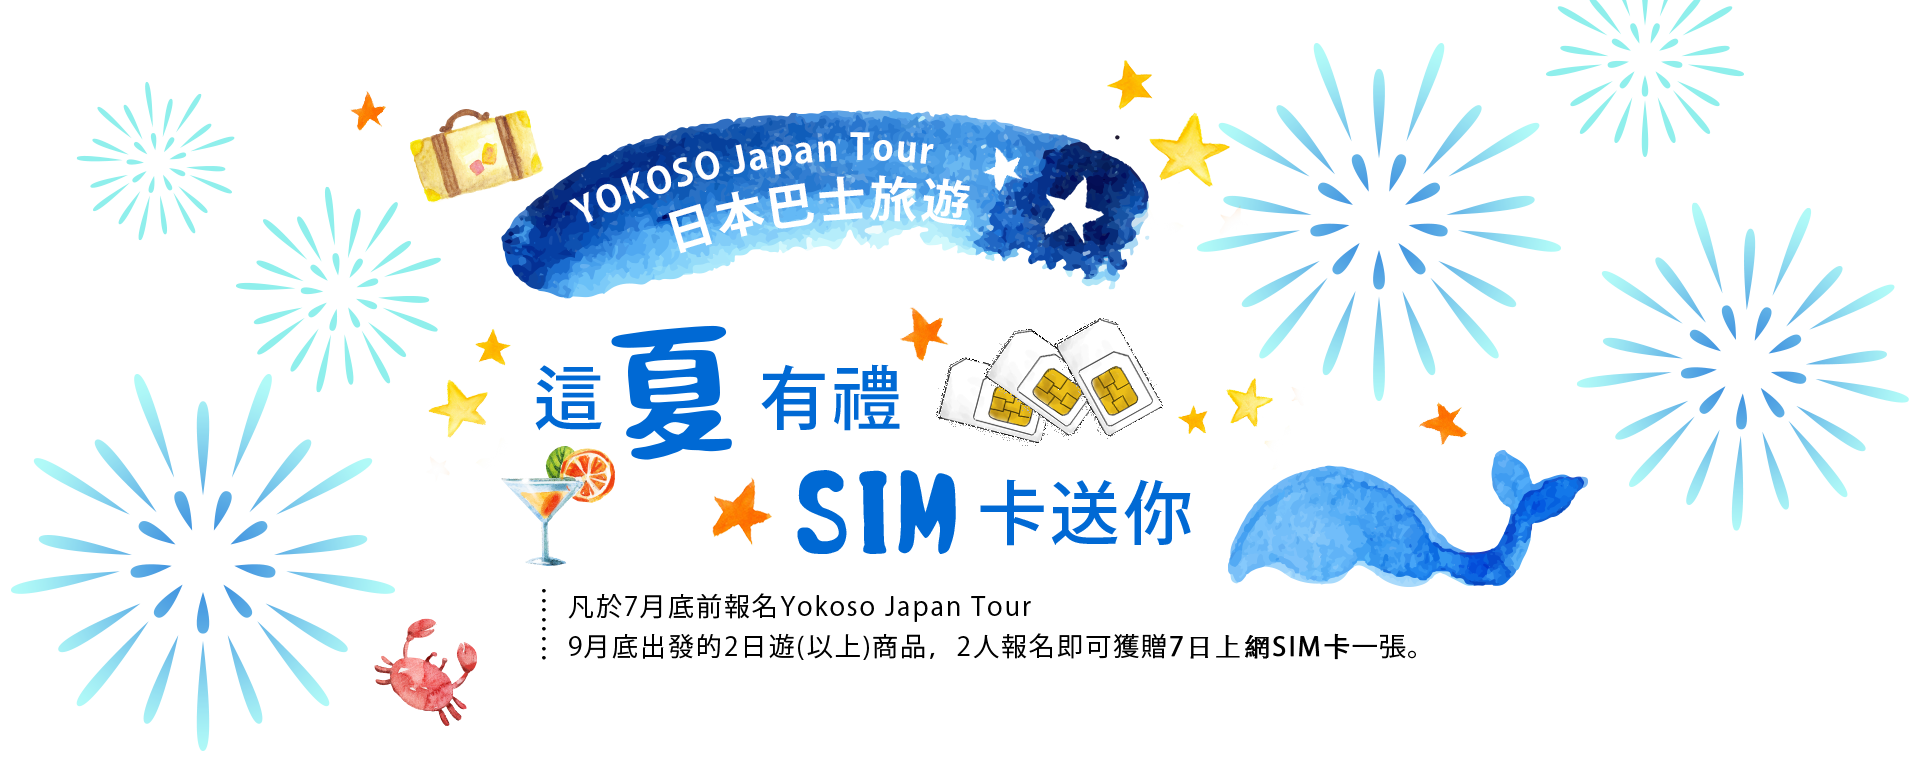 凡於6月底前報名Yokoso Japan Tour8月底出發的2日遊(以上)商品，2人報名即可獲贈7日上網SIM卡一張。